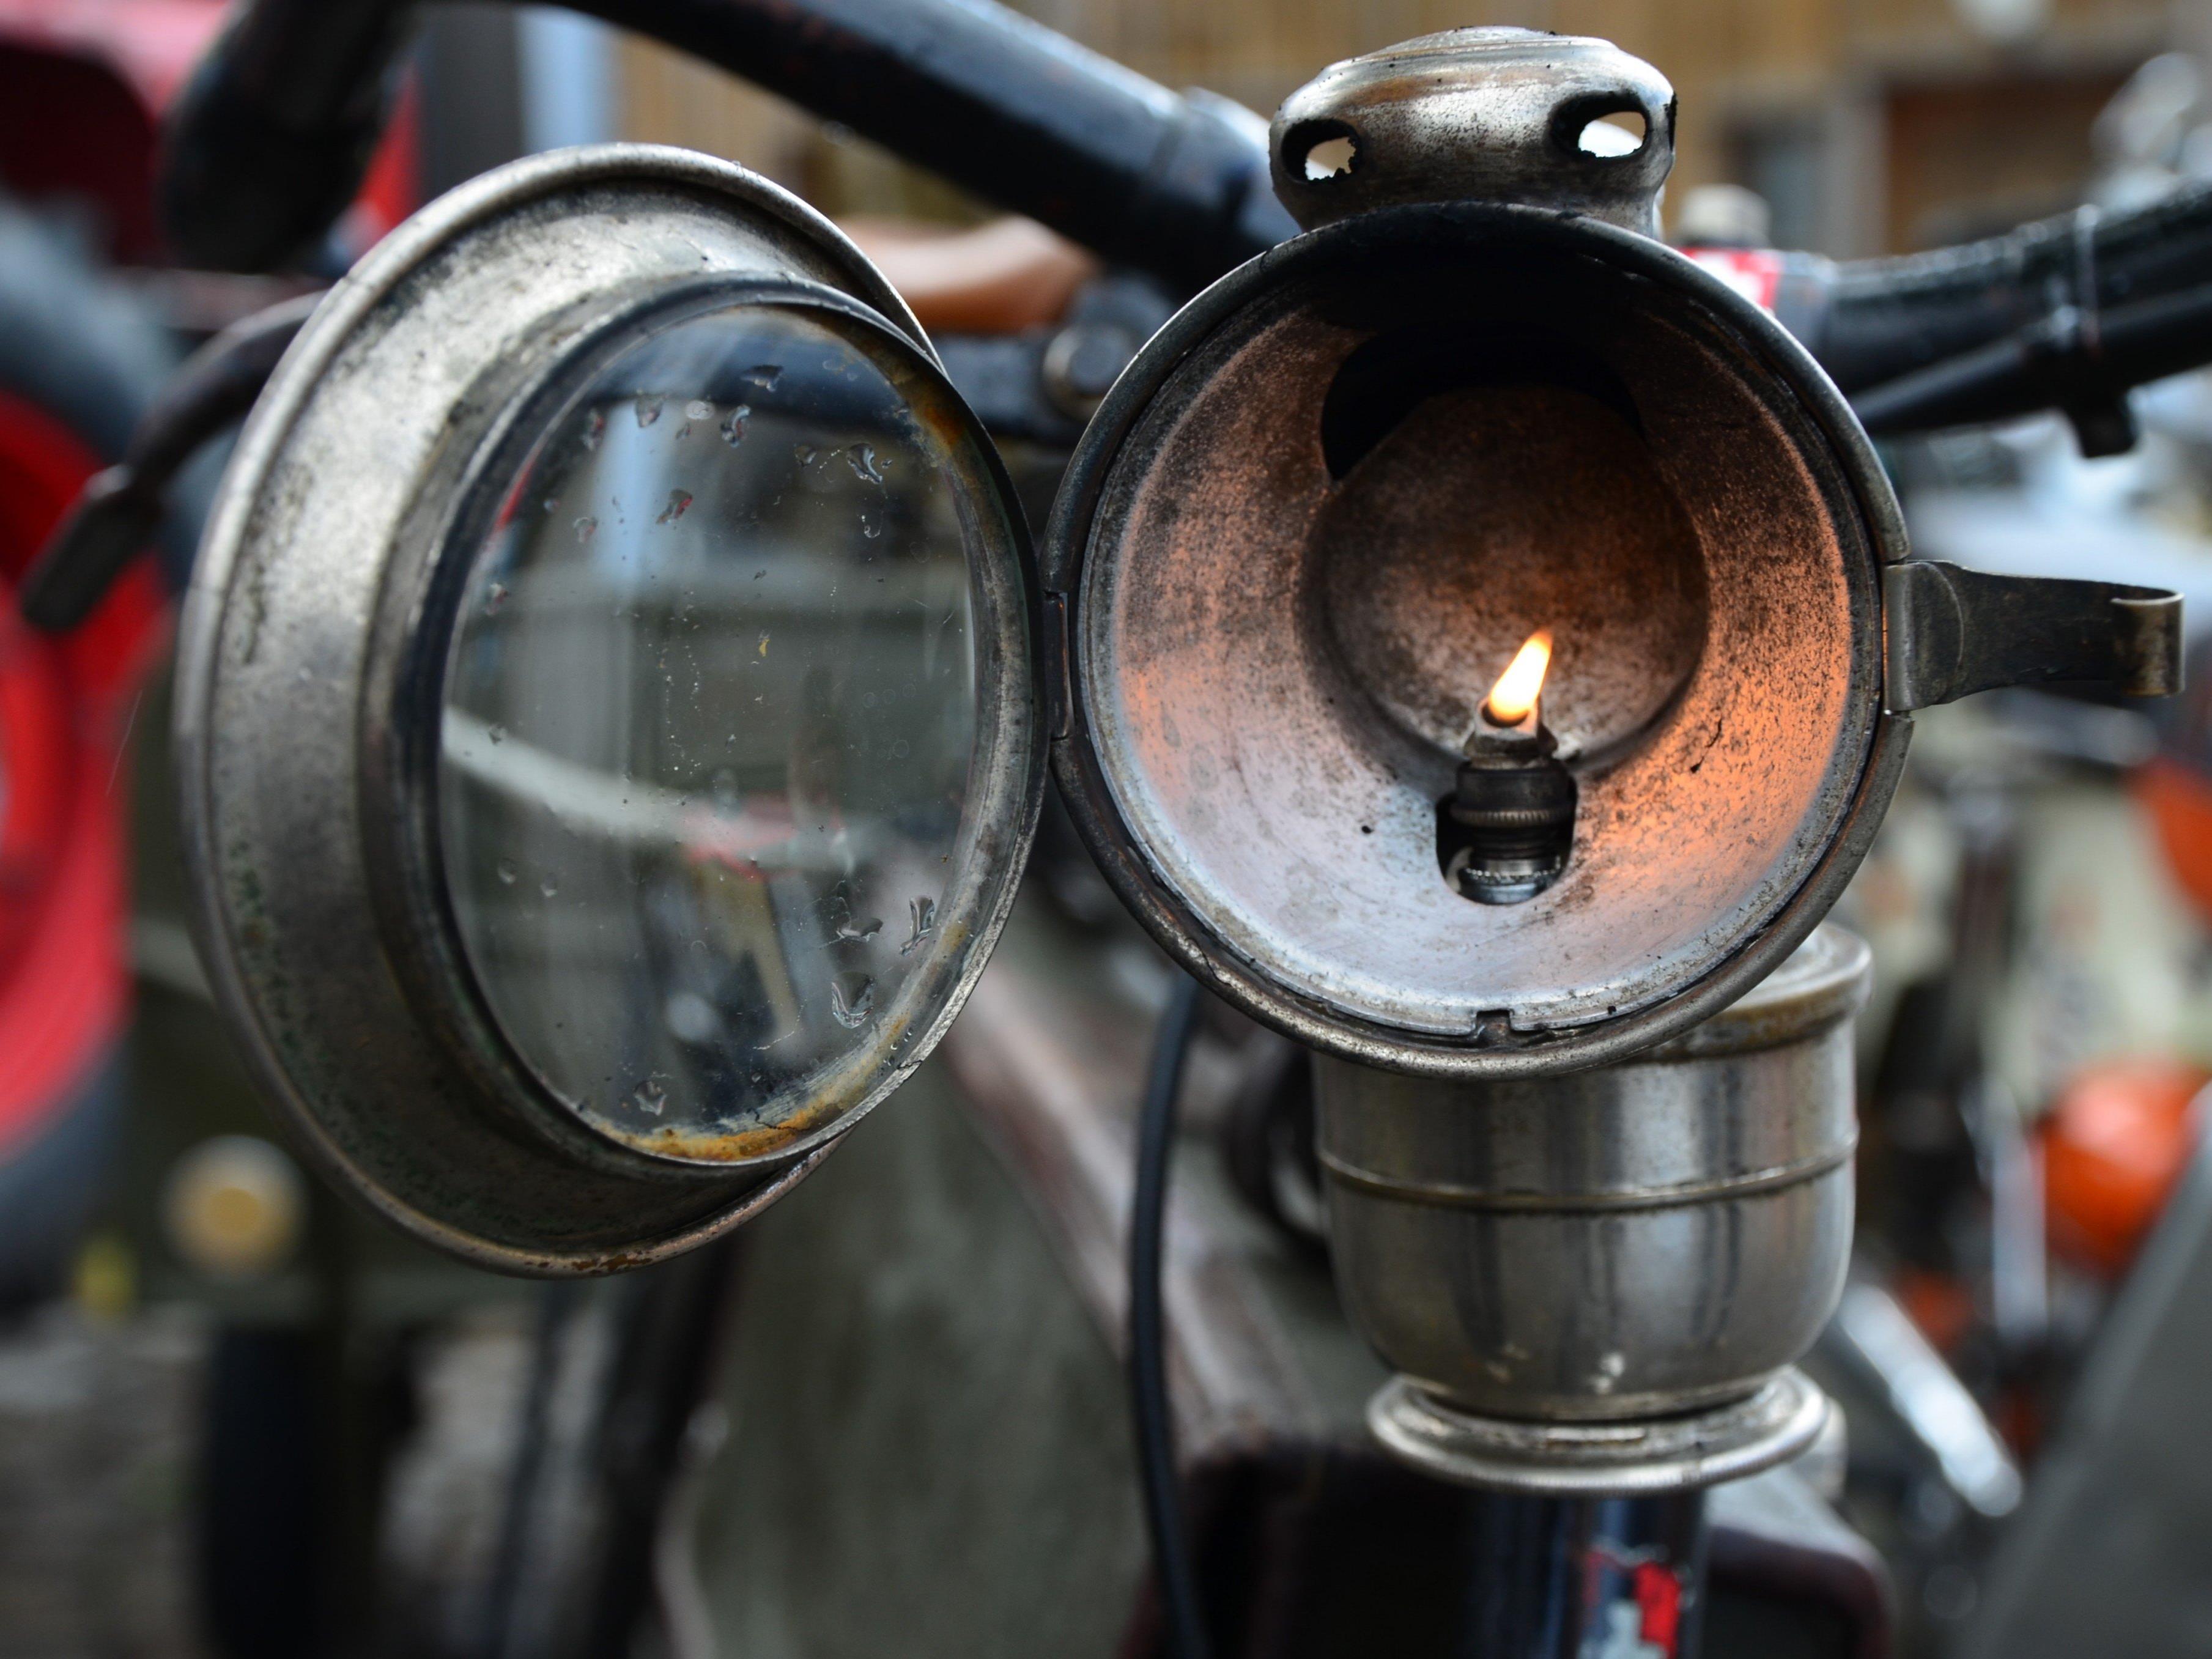 Fahrrad mit Karbidbeleuchtung